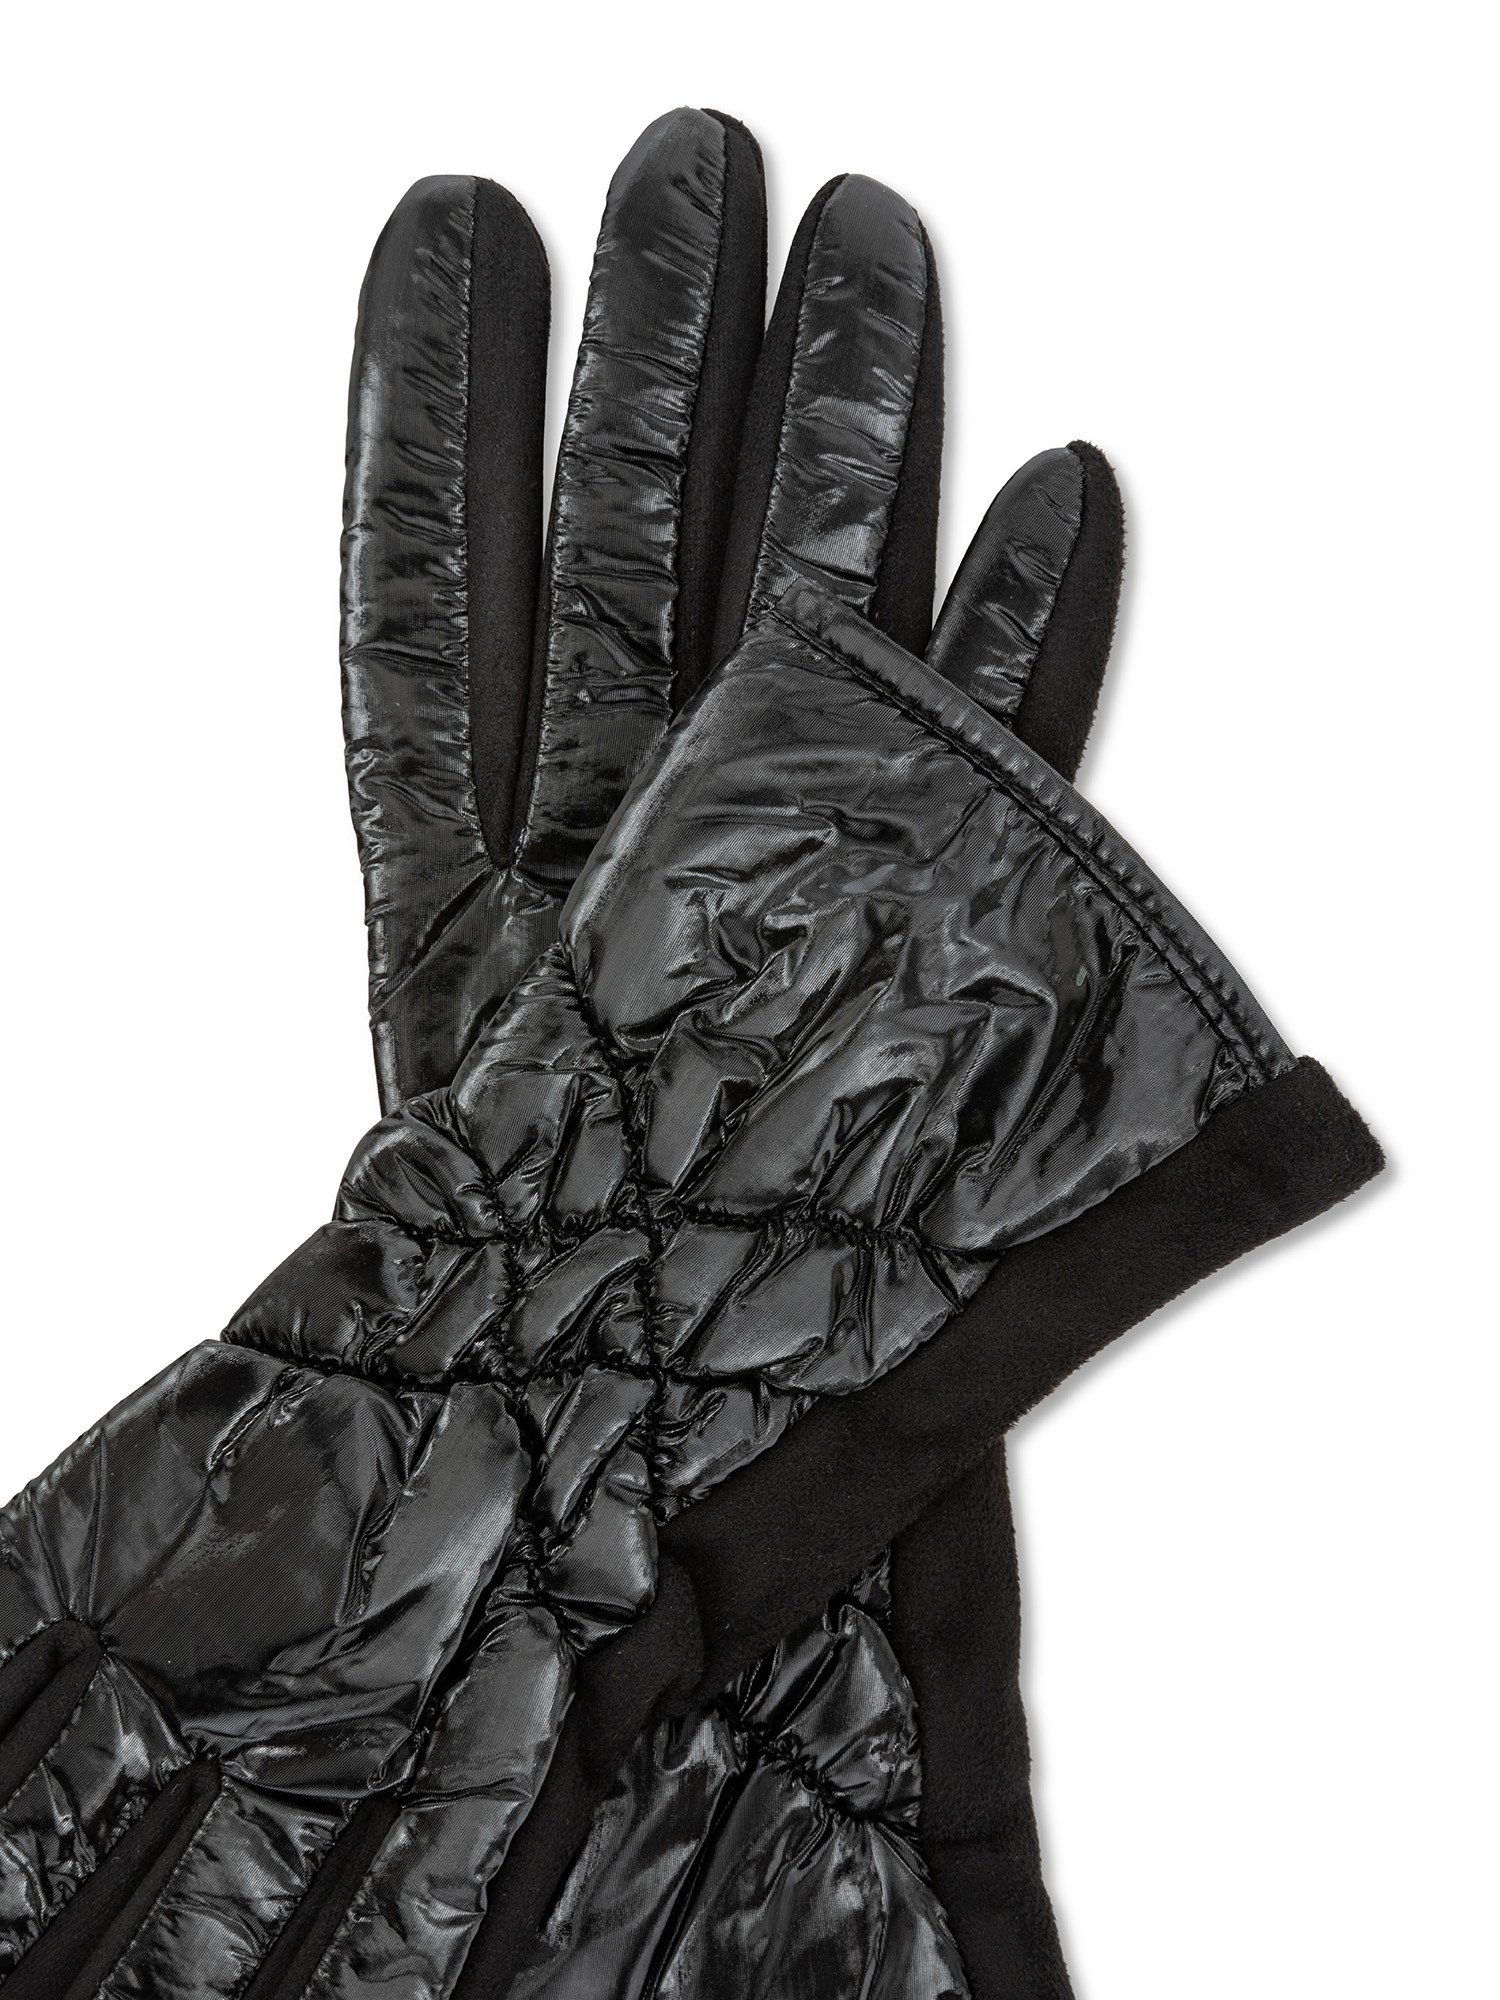 Koan - Quilted gloves, Black, large image number 1